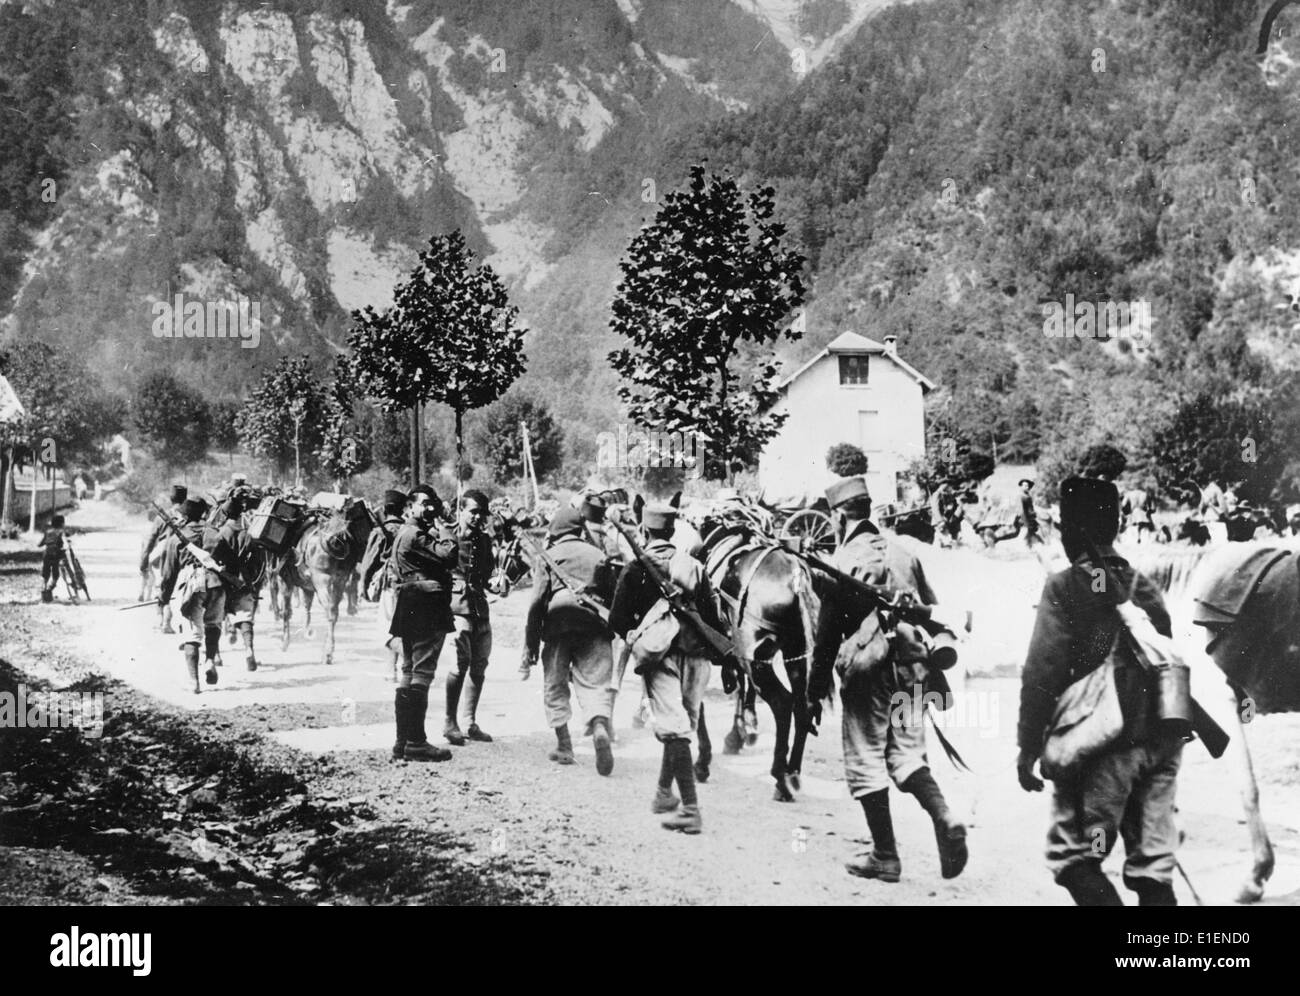 Le tableau de la propagande nazie montre des chasseurs français alpin qui marchent dans le village alpin du Bourg-d'Oisans en août 1938. Fotoarchiv für Zeitgeschichtee - PAS DE SERVICE DE FIL Banque D'Images